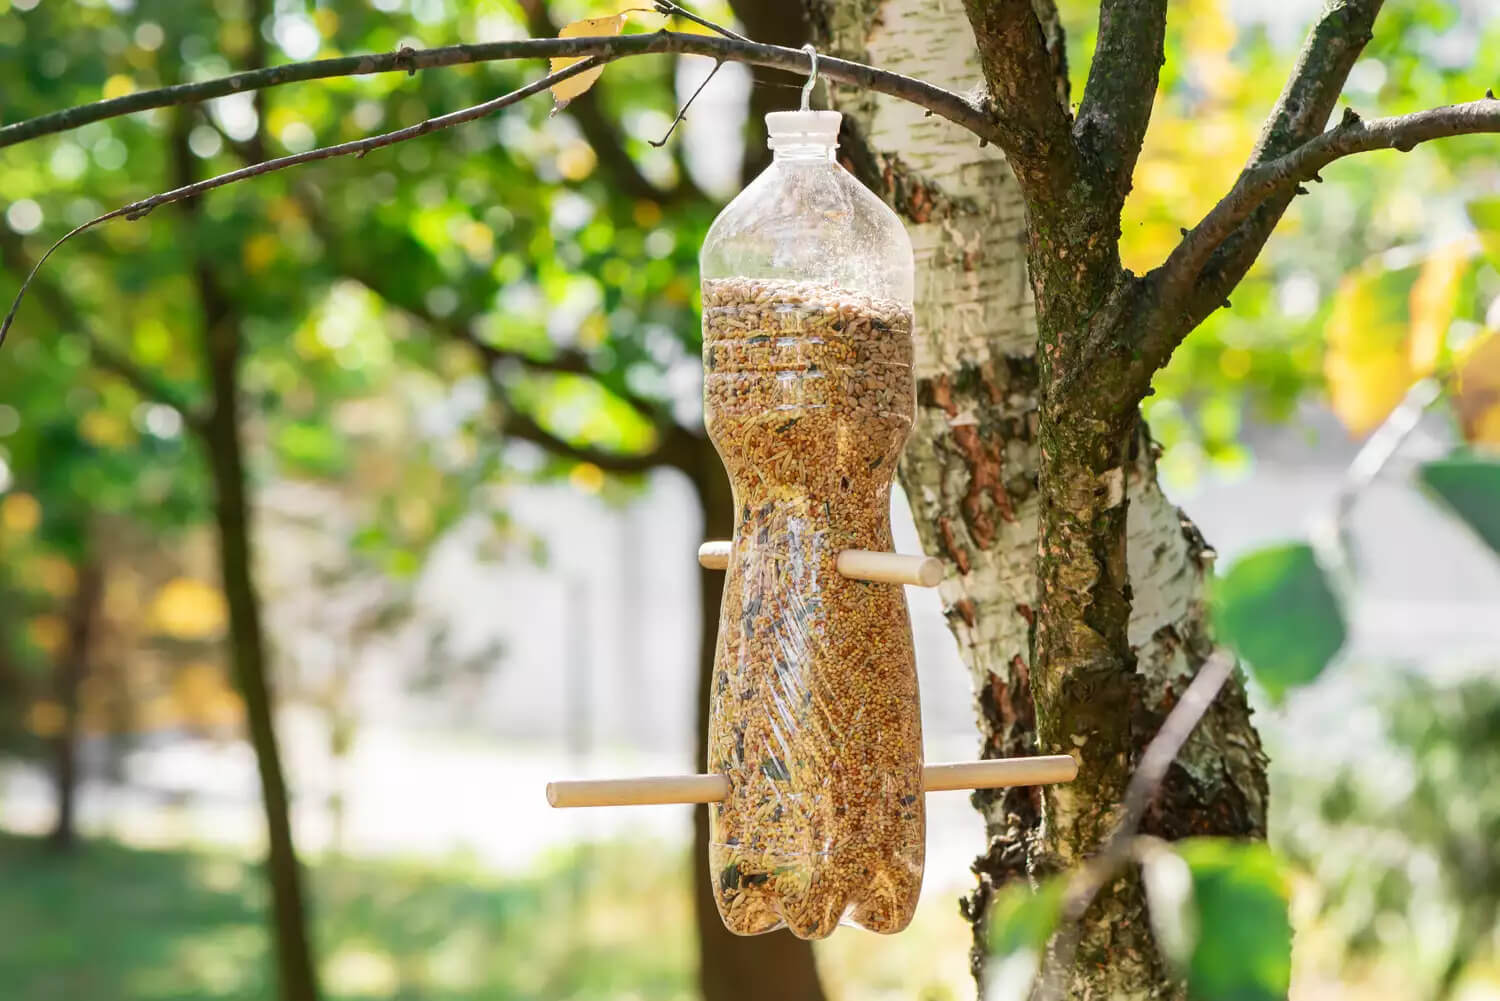 Handmade Bottle Bird Feeder Craft Using Recycled Bottle